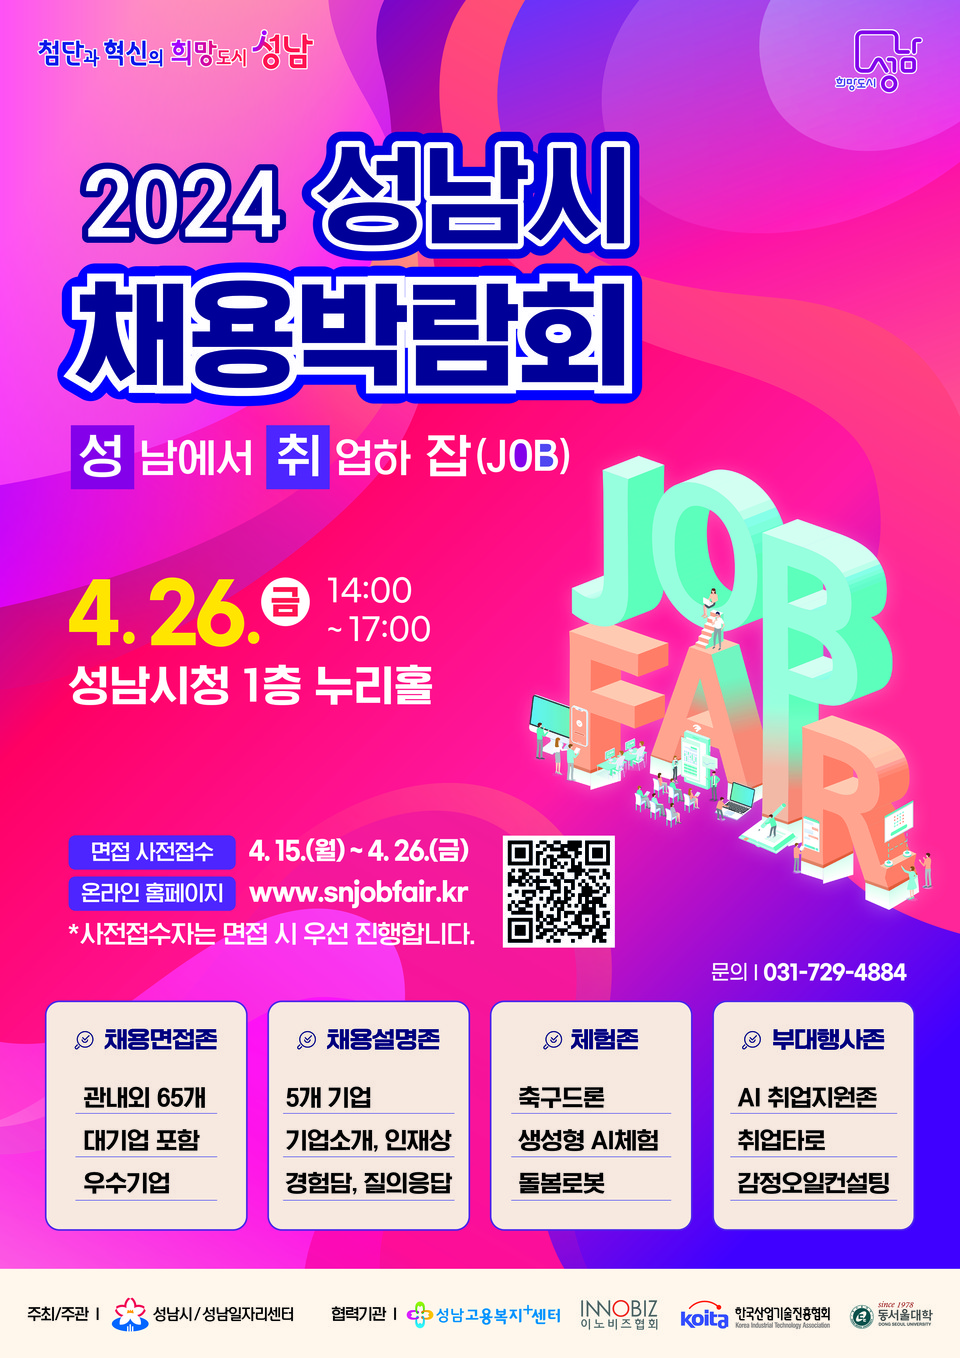 ▲ 성남시, ‘2024 성남시 채용박람회’ 4월 26일 개최 안내